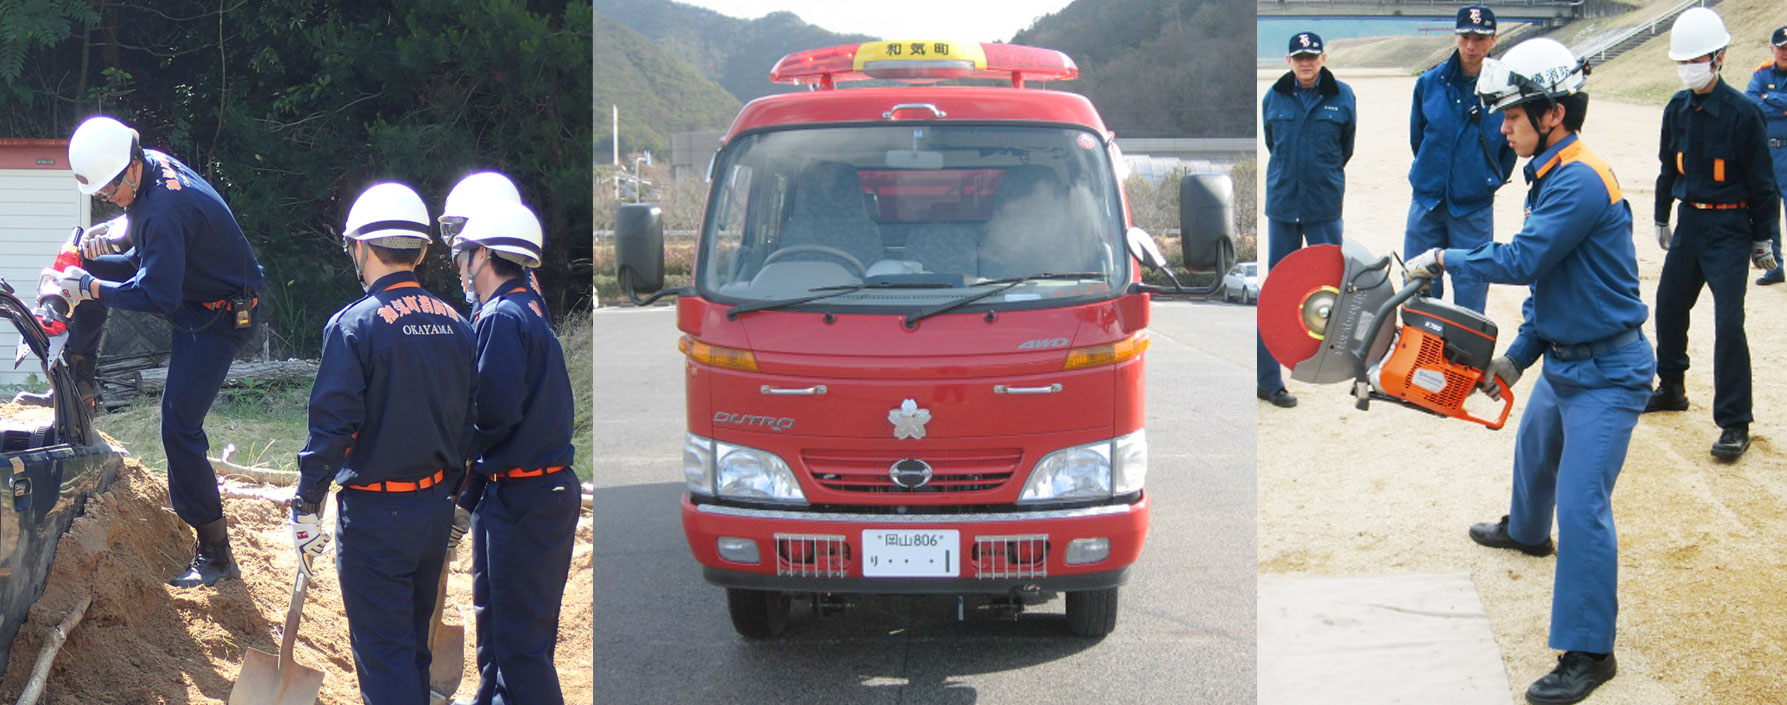 左：前方部分から運転席まで土に埋もれている車を、消防隊員がスプレッダーを使ってこじ開けている様子と、その横でスコップを持ちながら見守っている3名の消防隊員の写真。中央：赤色のボディの消防車を前方から撮影した写真。右：消防隊員の一人がエンジンカッターを使用している様子を周りで見守っている数名の消防隊員の写真